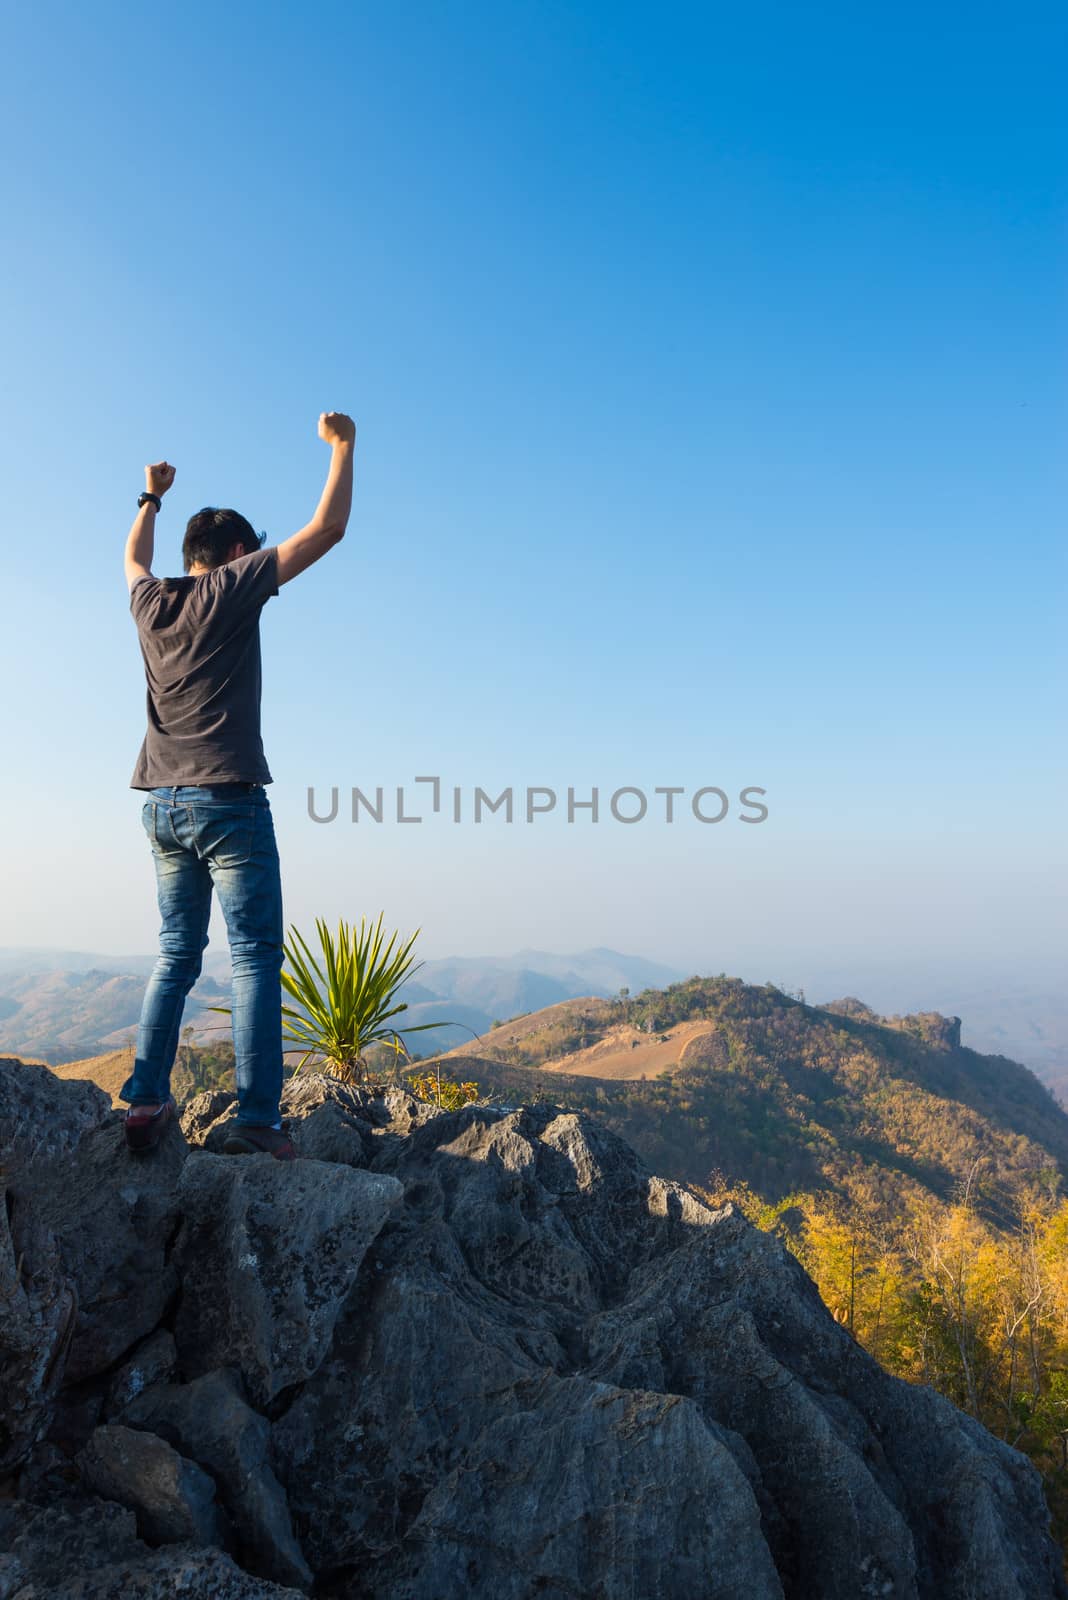 man on rock at mountain by moggara12